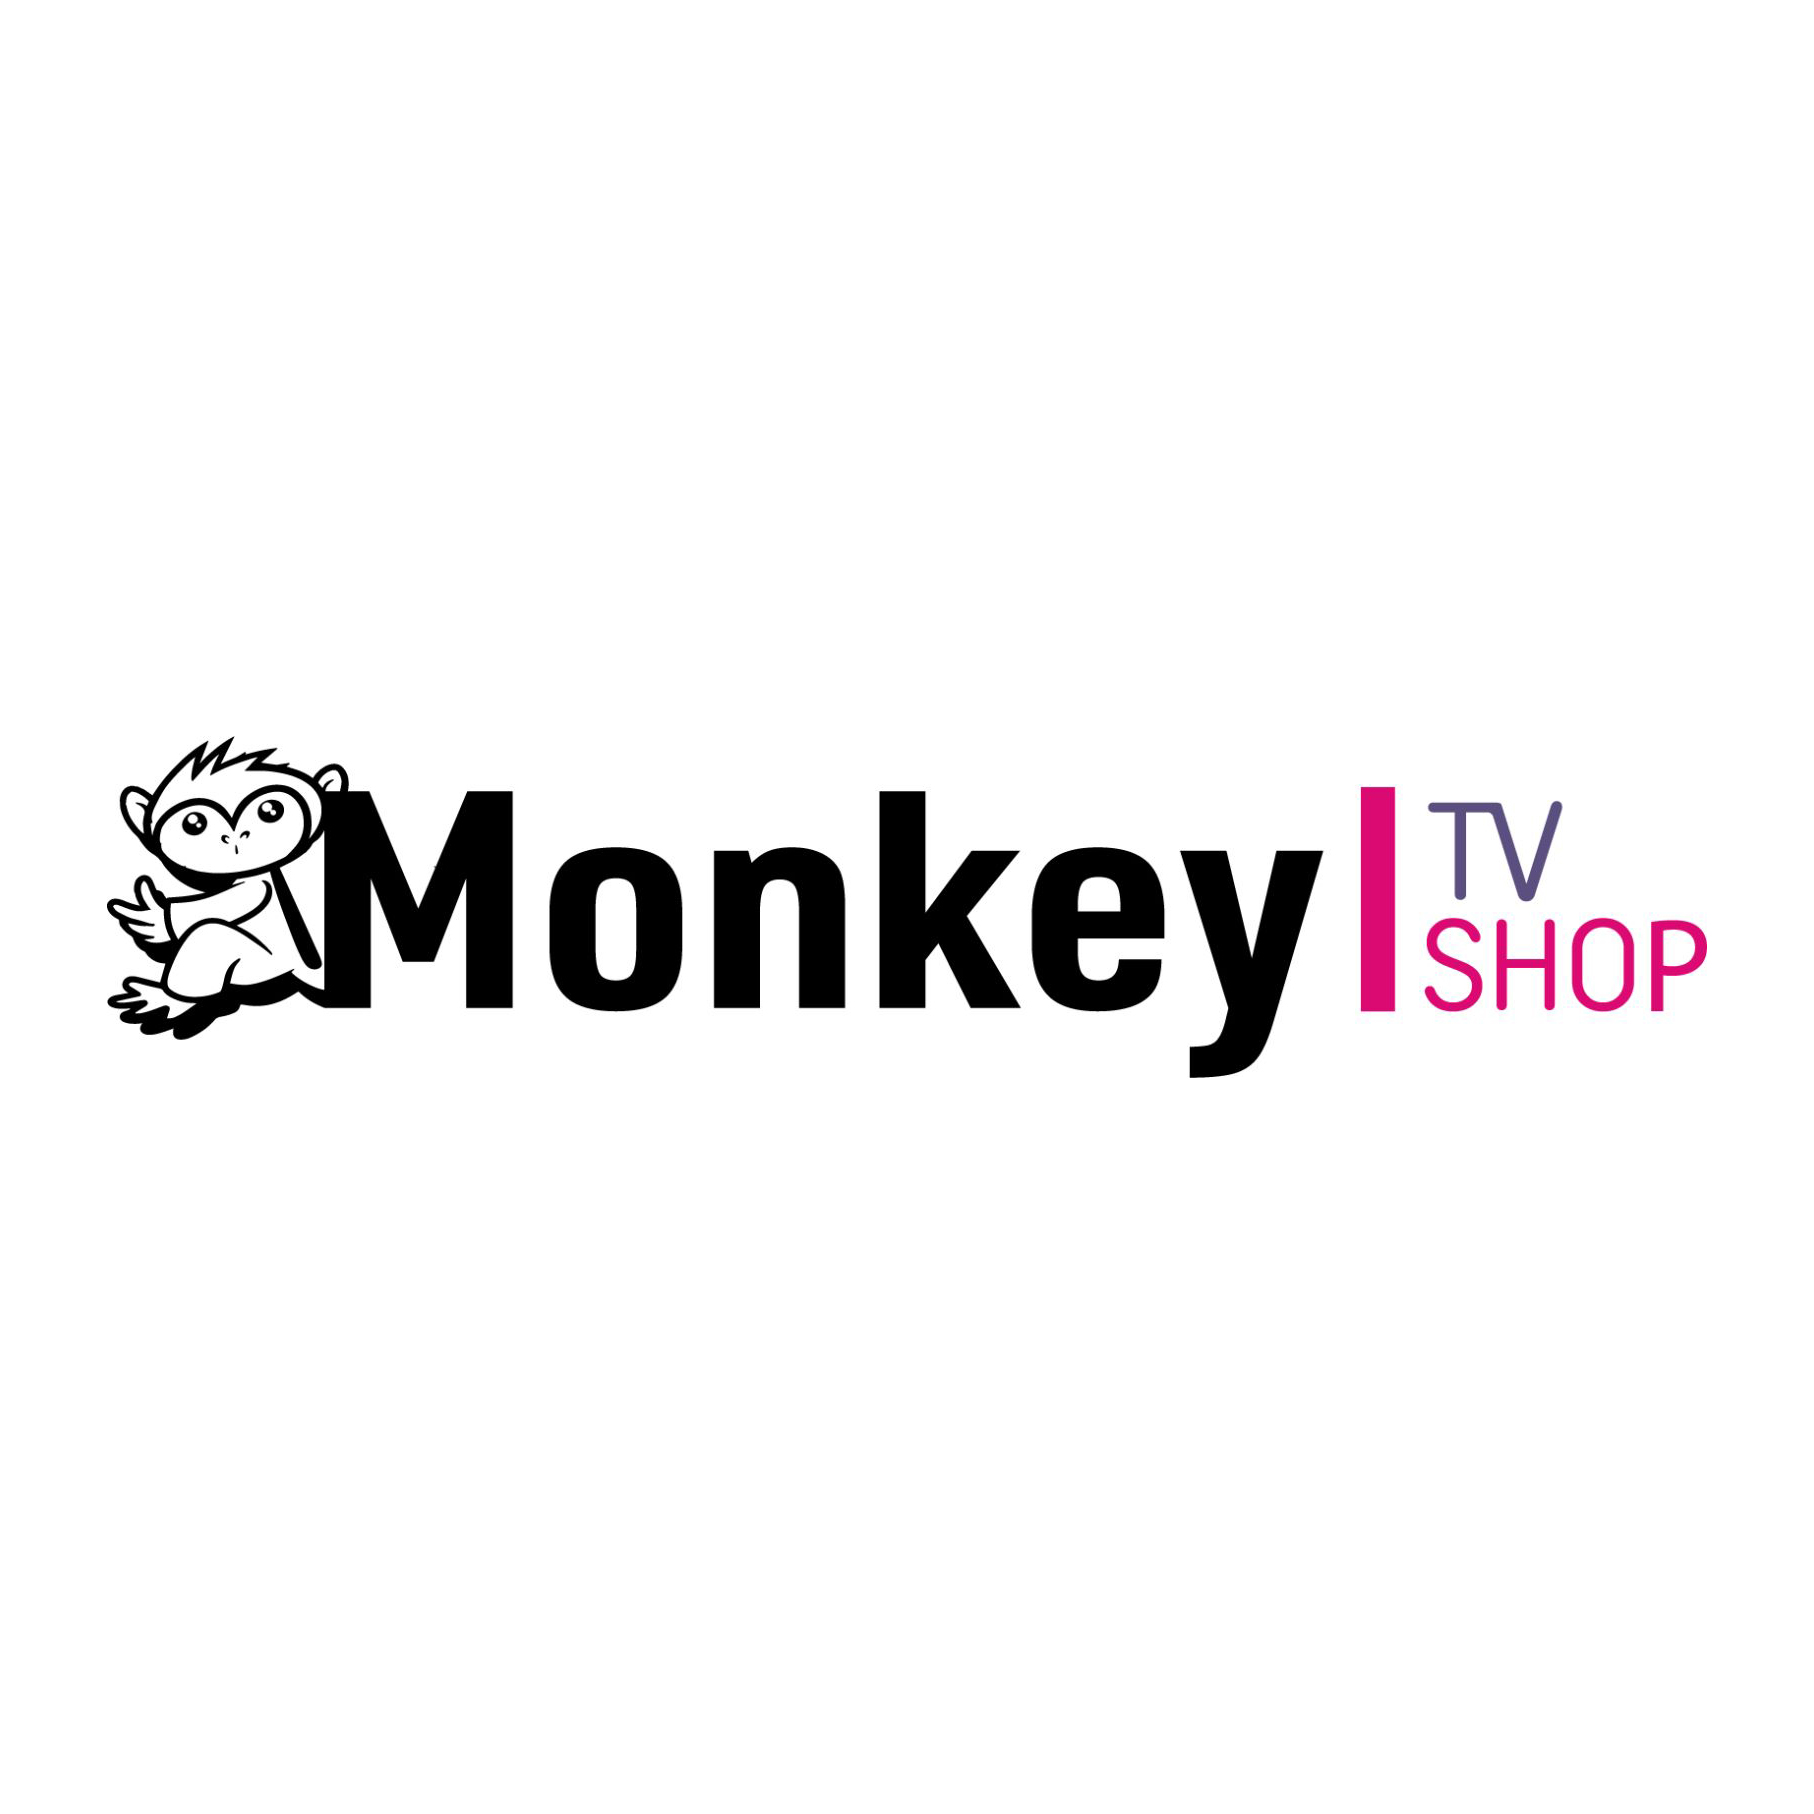 Monkey TV Shop